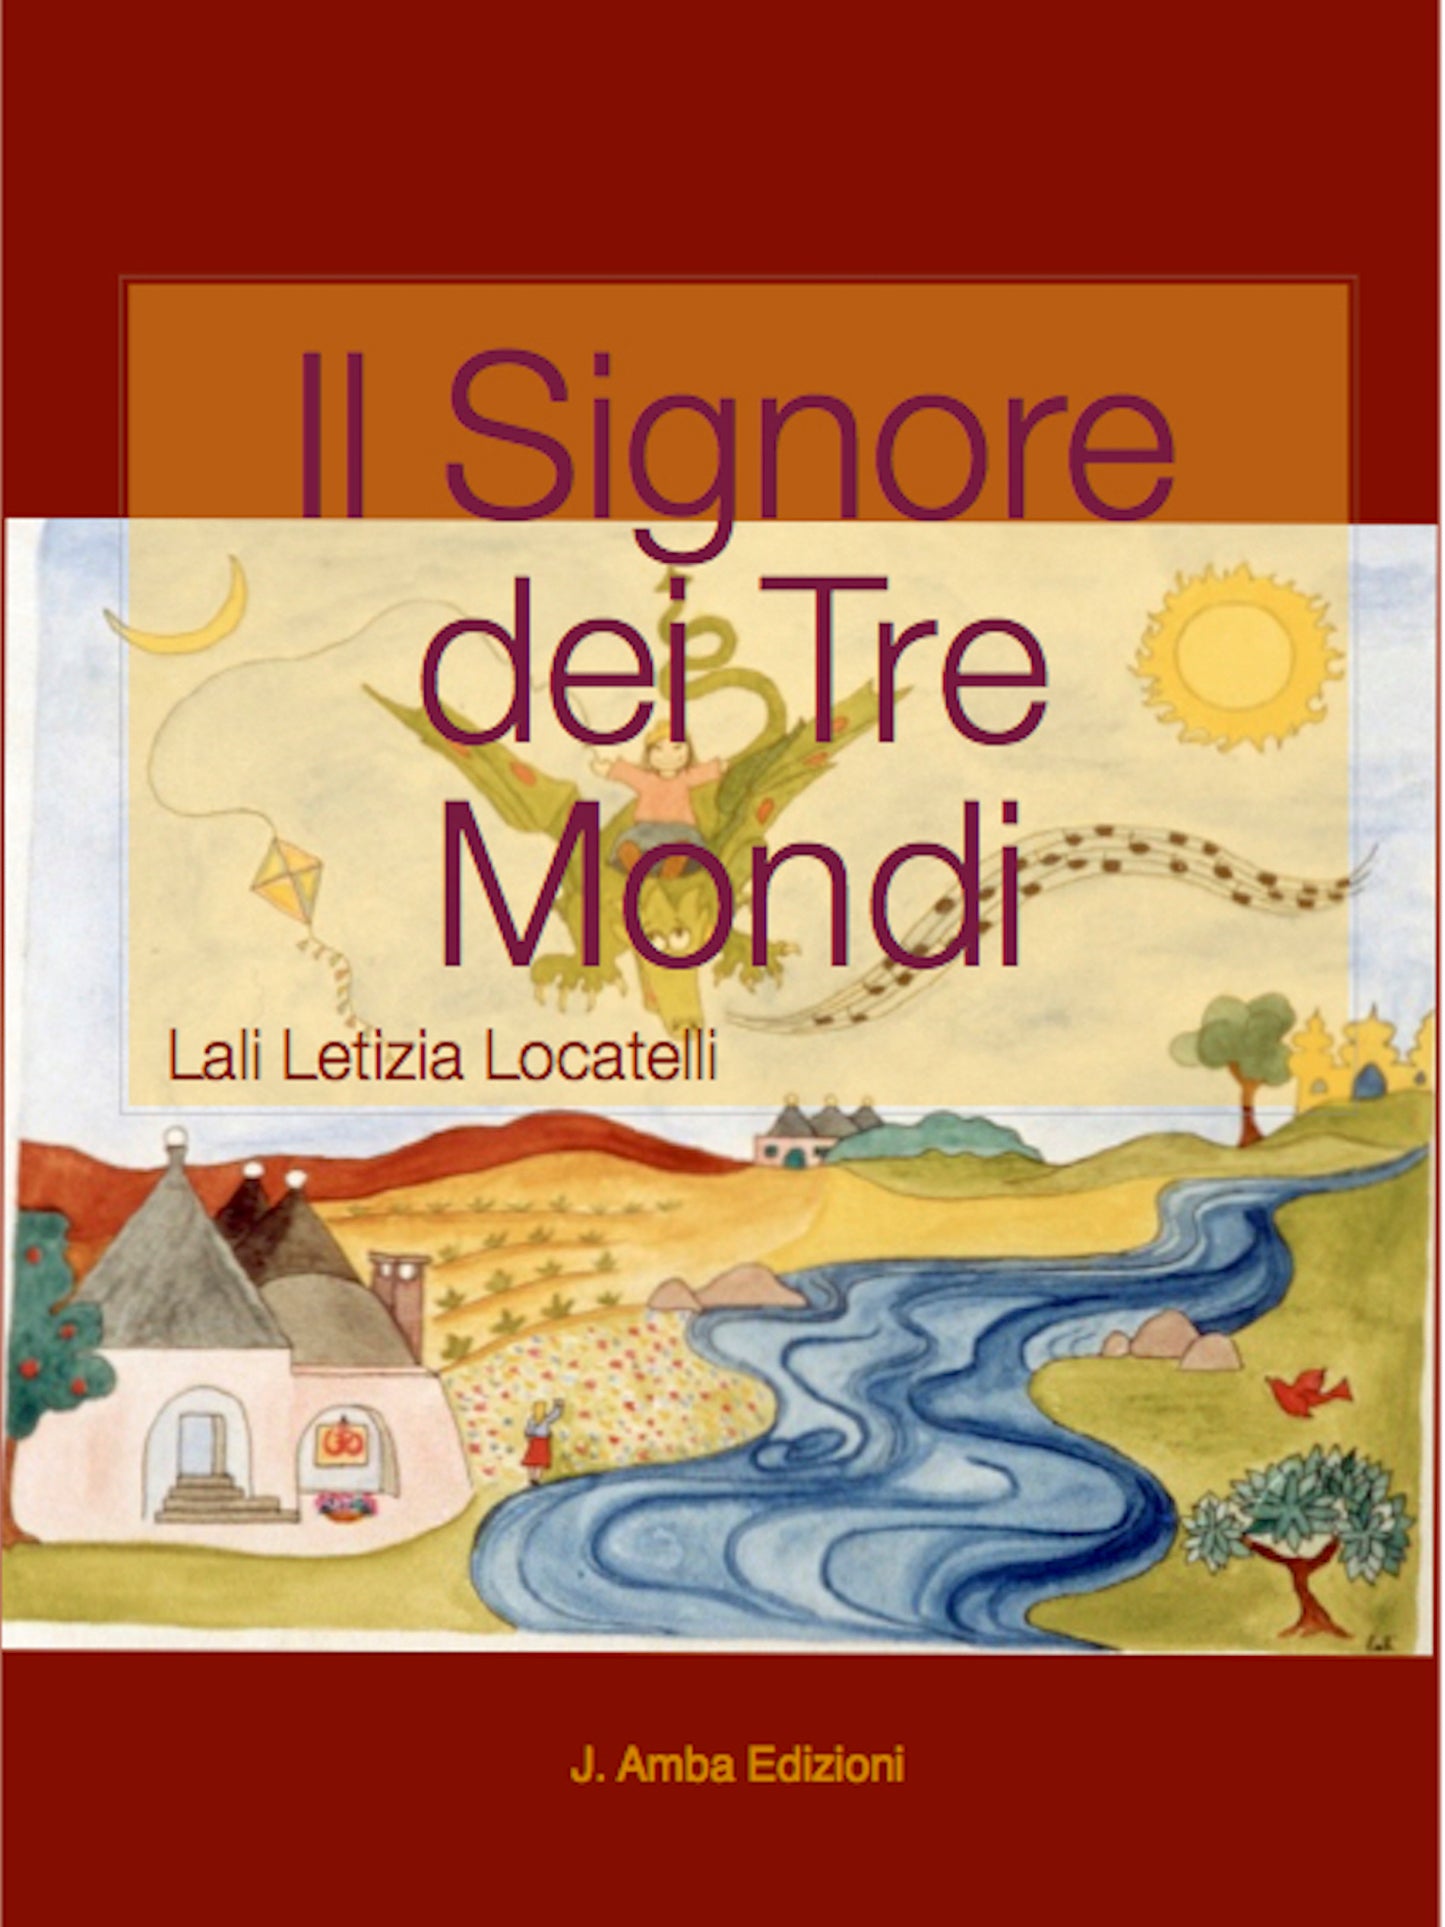 The Lord of the Three Worlds - Il Signore dei Tre Mondi - Hindu Sanatan Dharma Spirituality Children Book Fairy Tale by Lali Letizia Locatelli